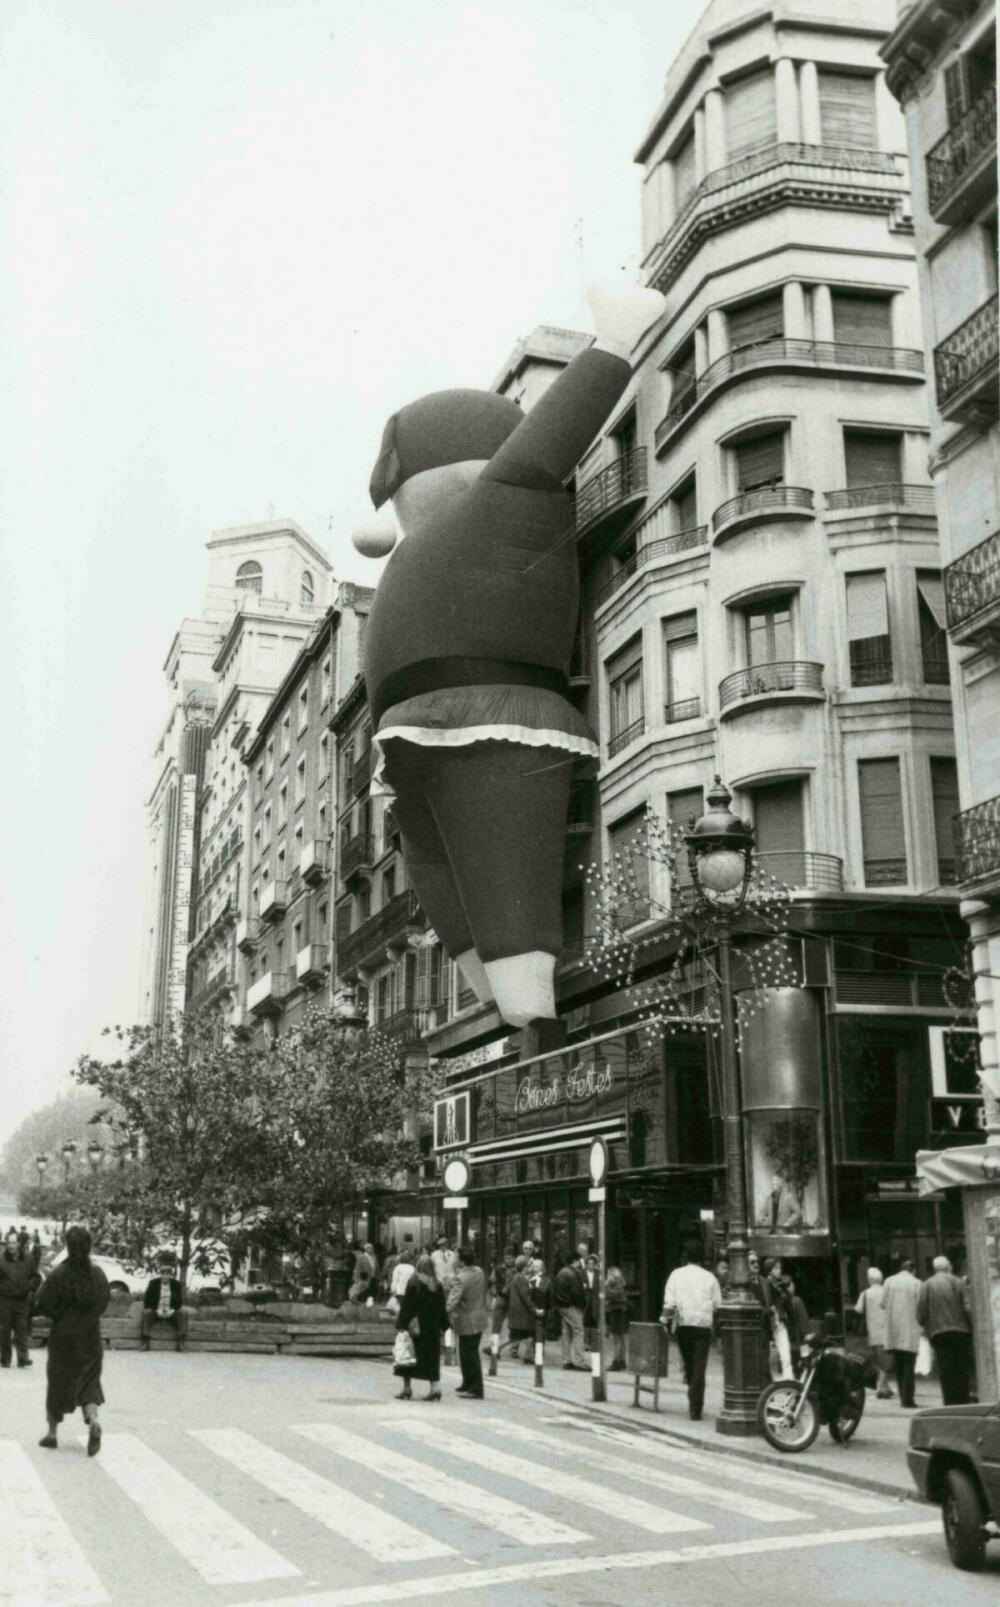 Els carrer s'ornamenten per Nadal, 15 de novembre de 1989. AFB. Pérez de Rozas